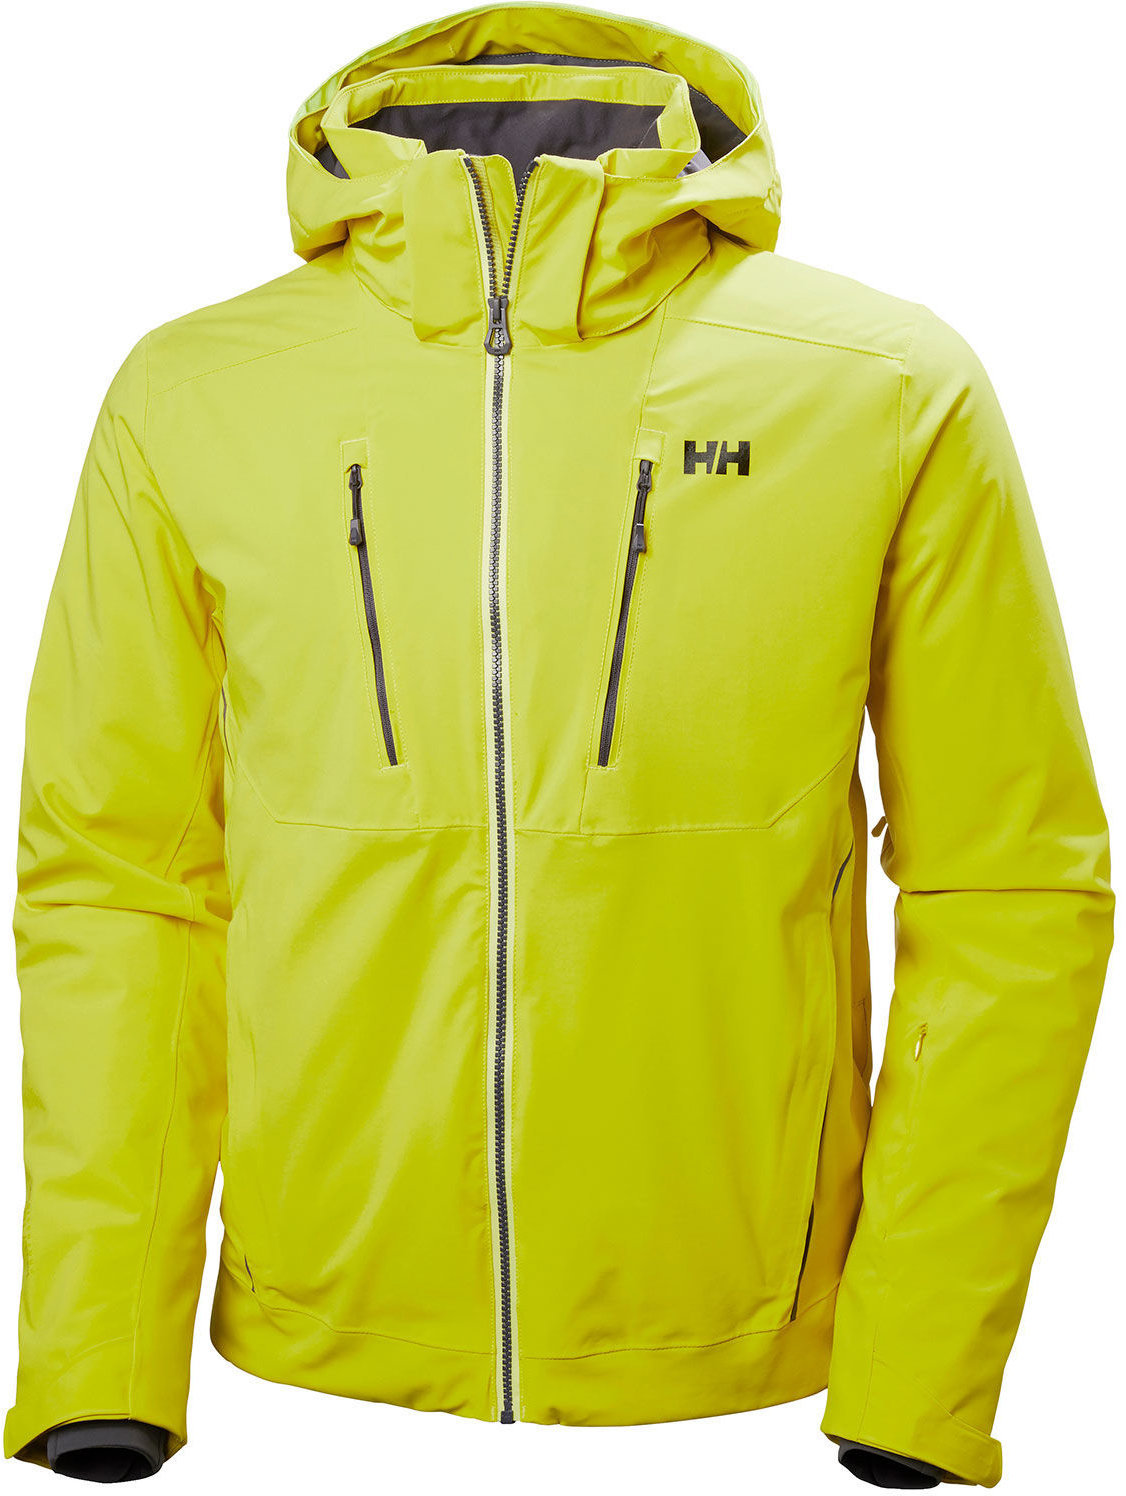 Lyžařská bunda Helly Hansen XL